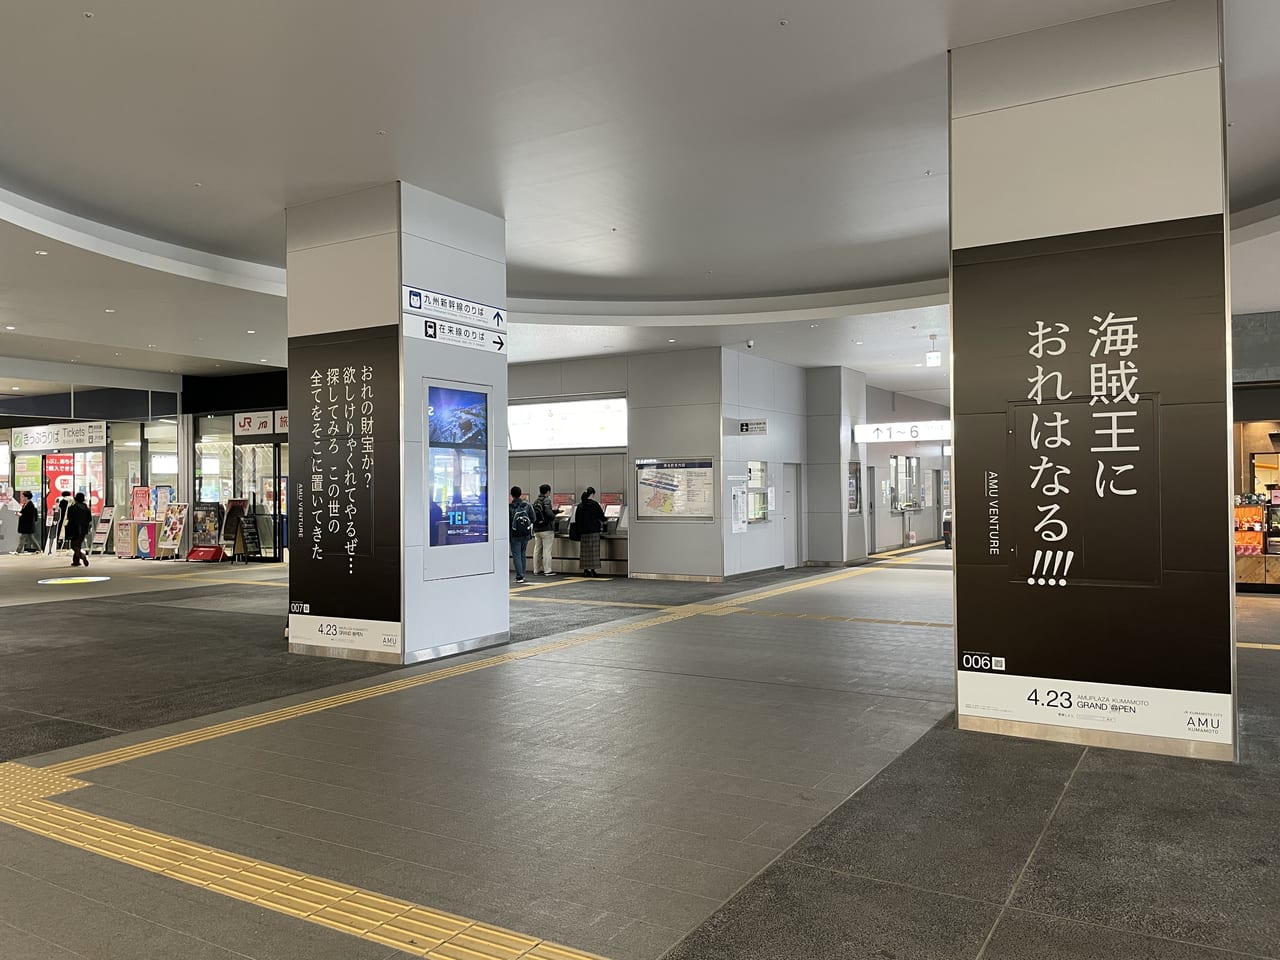 熊本市 駅構内に 名セリフ アミュプラザくまもと開業キャンペーンが開催されています 号外net 熊本市中央区 東区